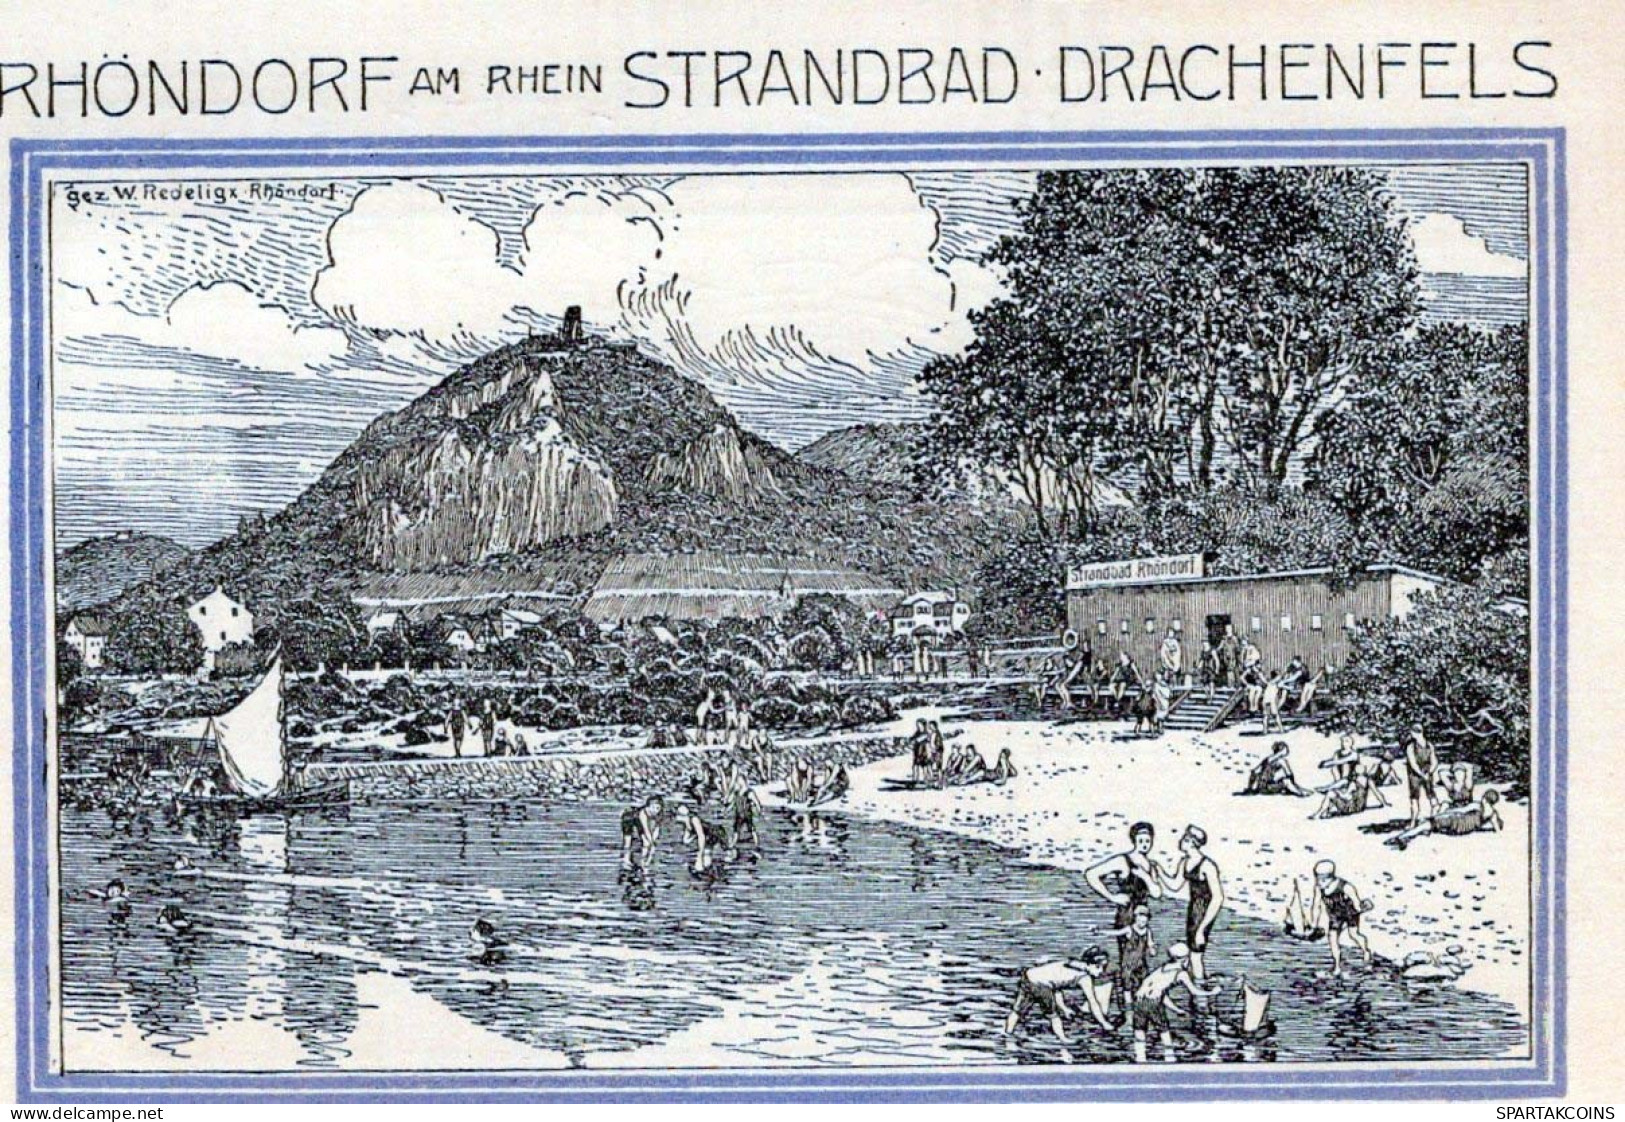 50 PFENNIG 1921 Stadt BAD HONNEF Rhine UNC DEUTSCHLAND Notgeld Banknote #PI478 - [11] Emissions Locales